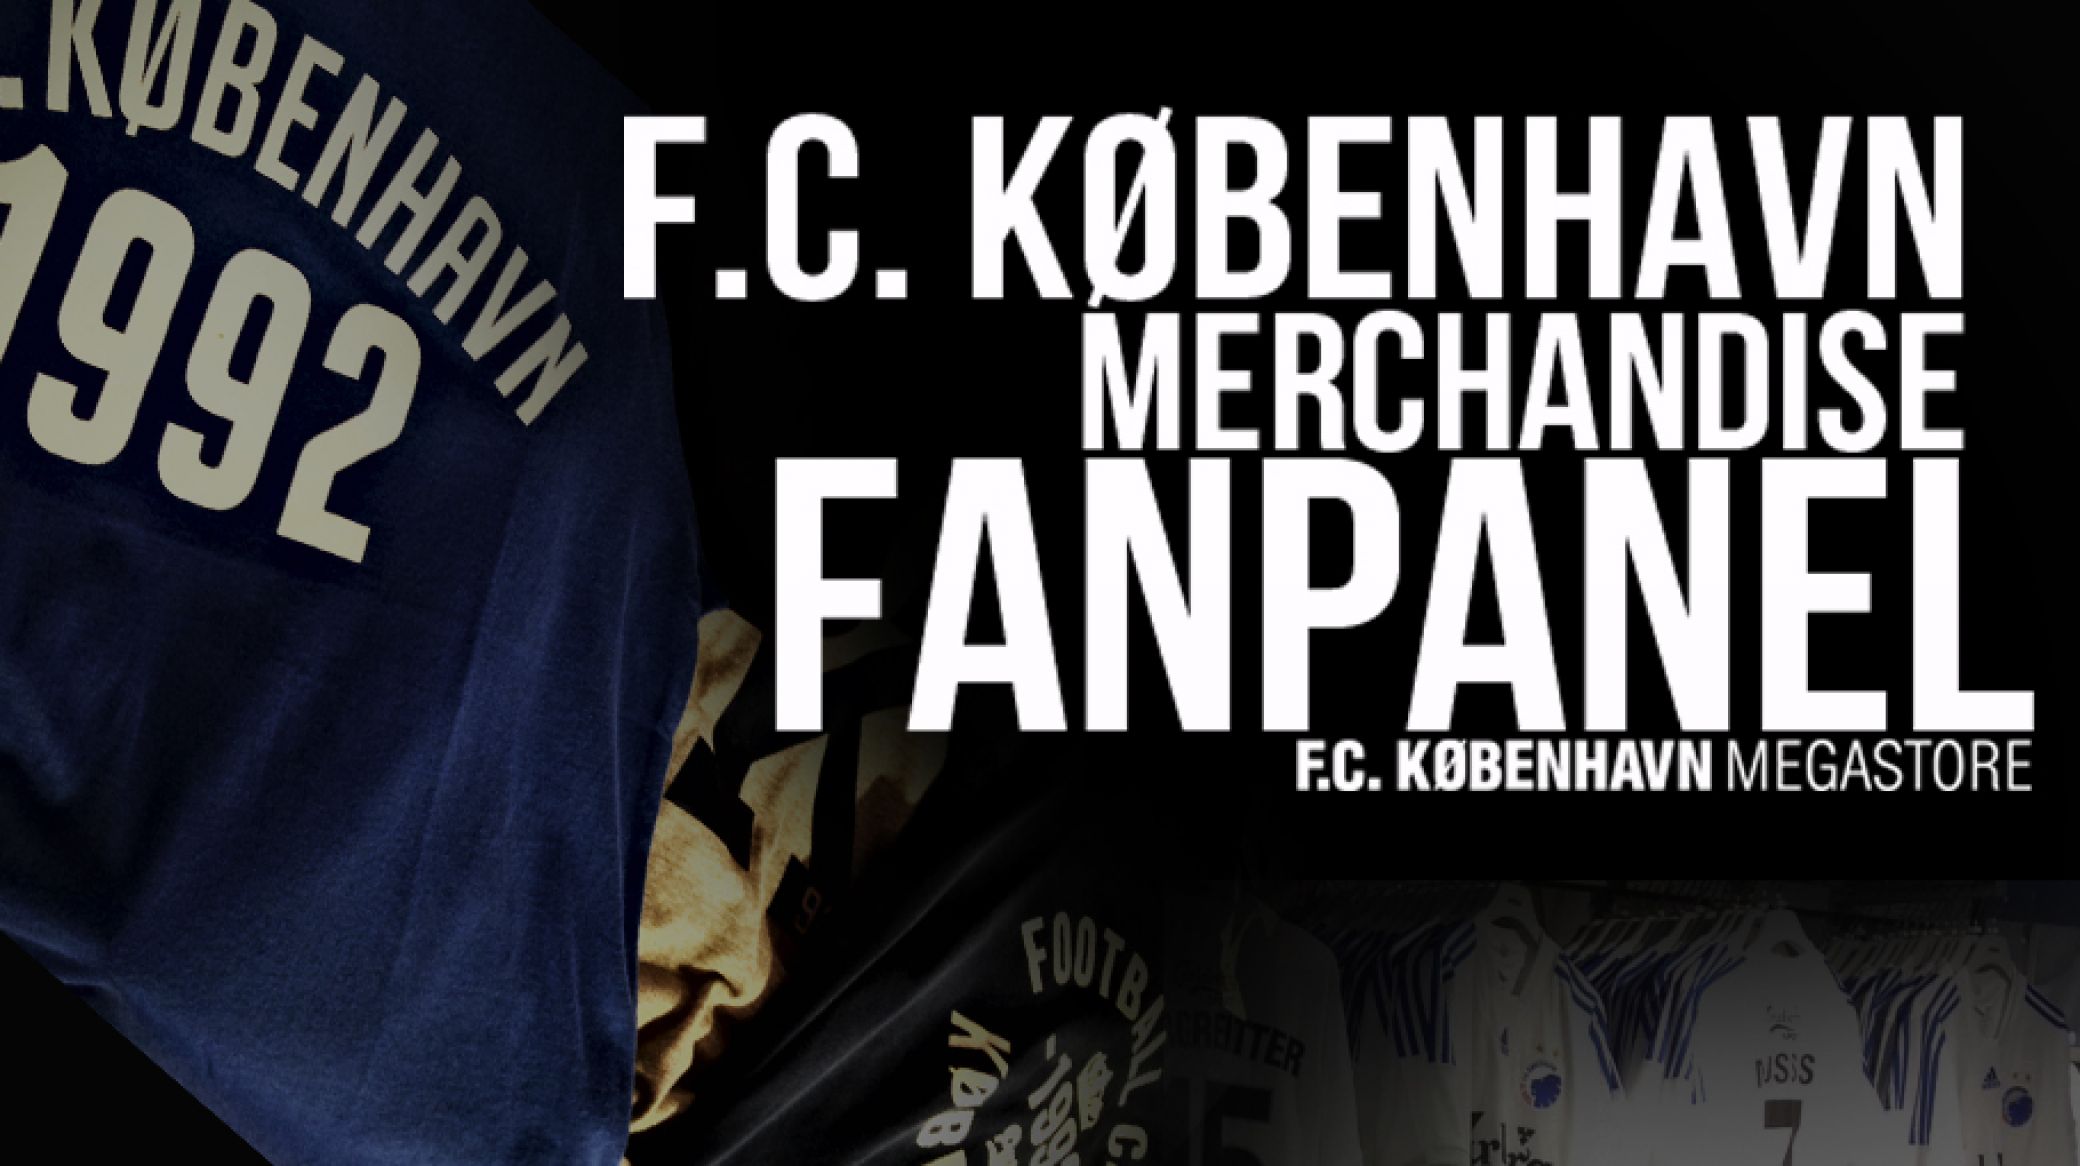 Bliv en del af F.C. København Merchandise FANPANEL